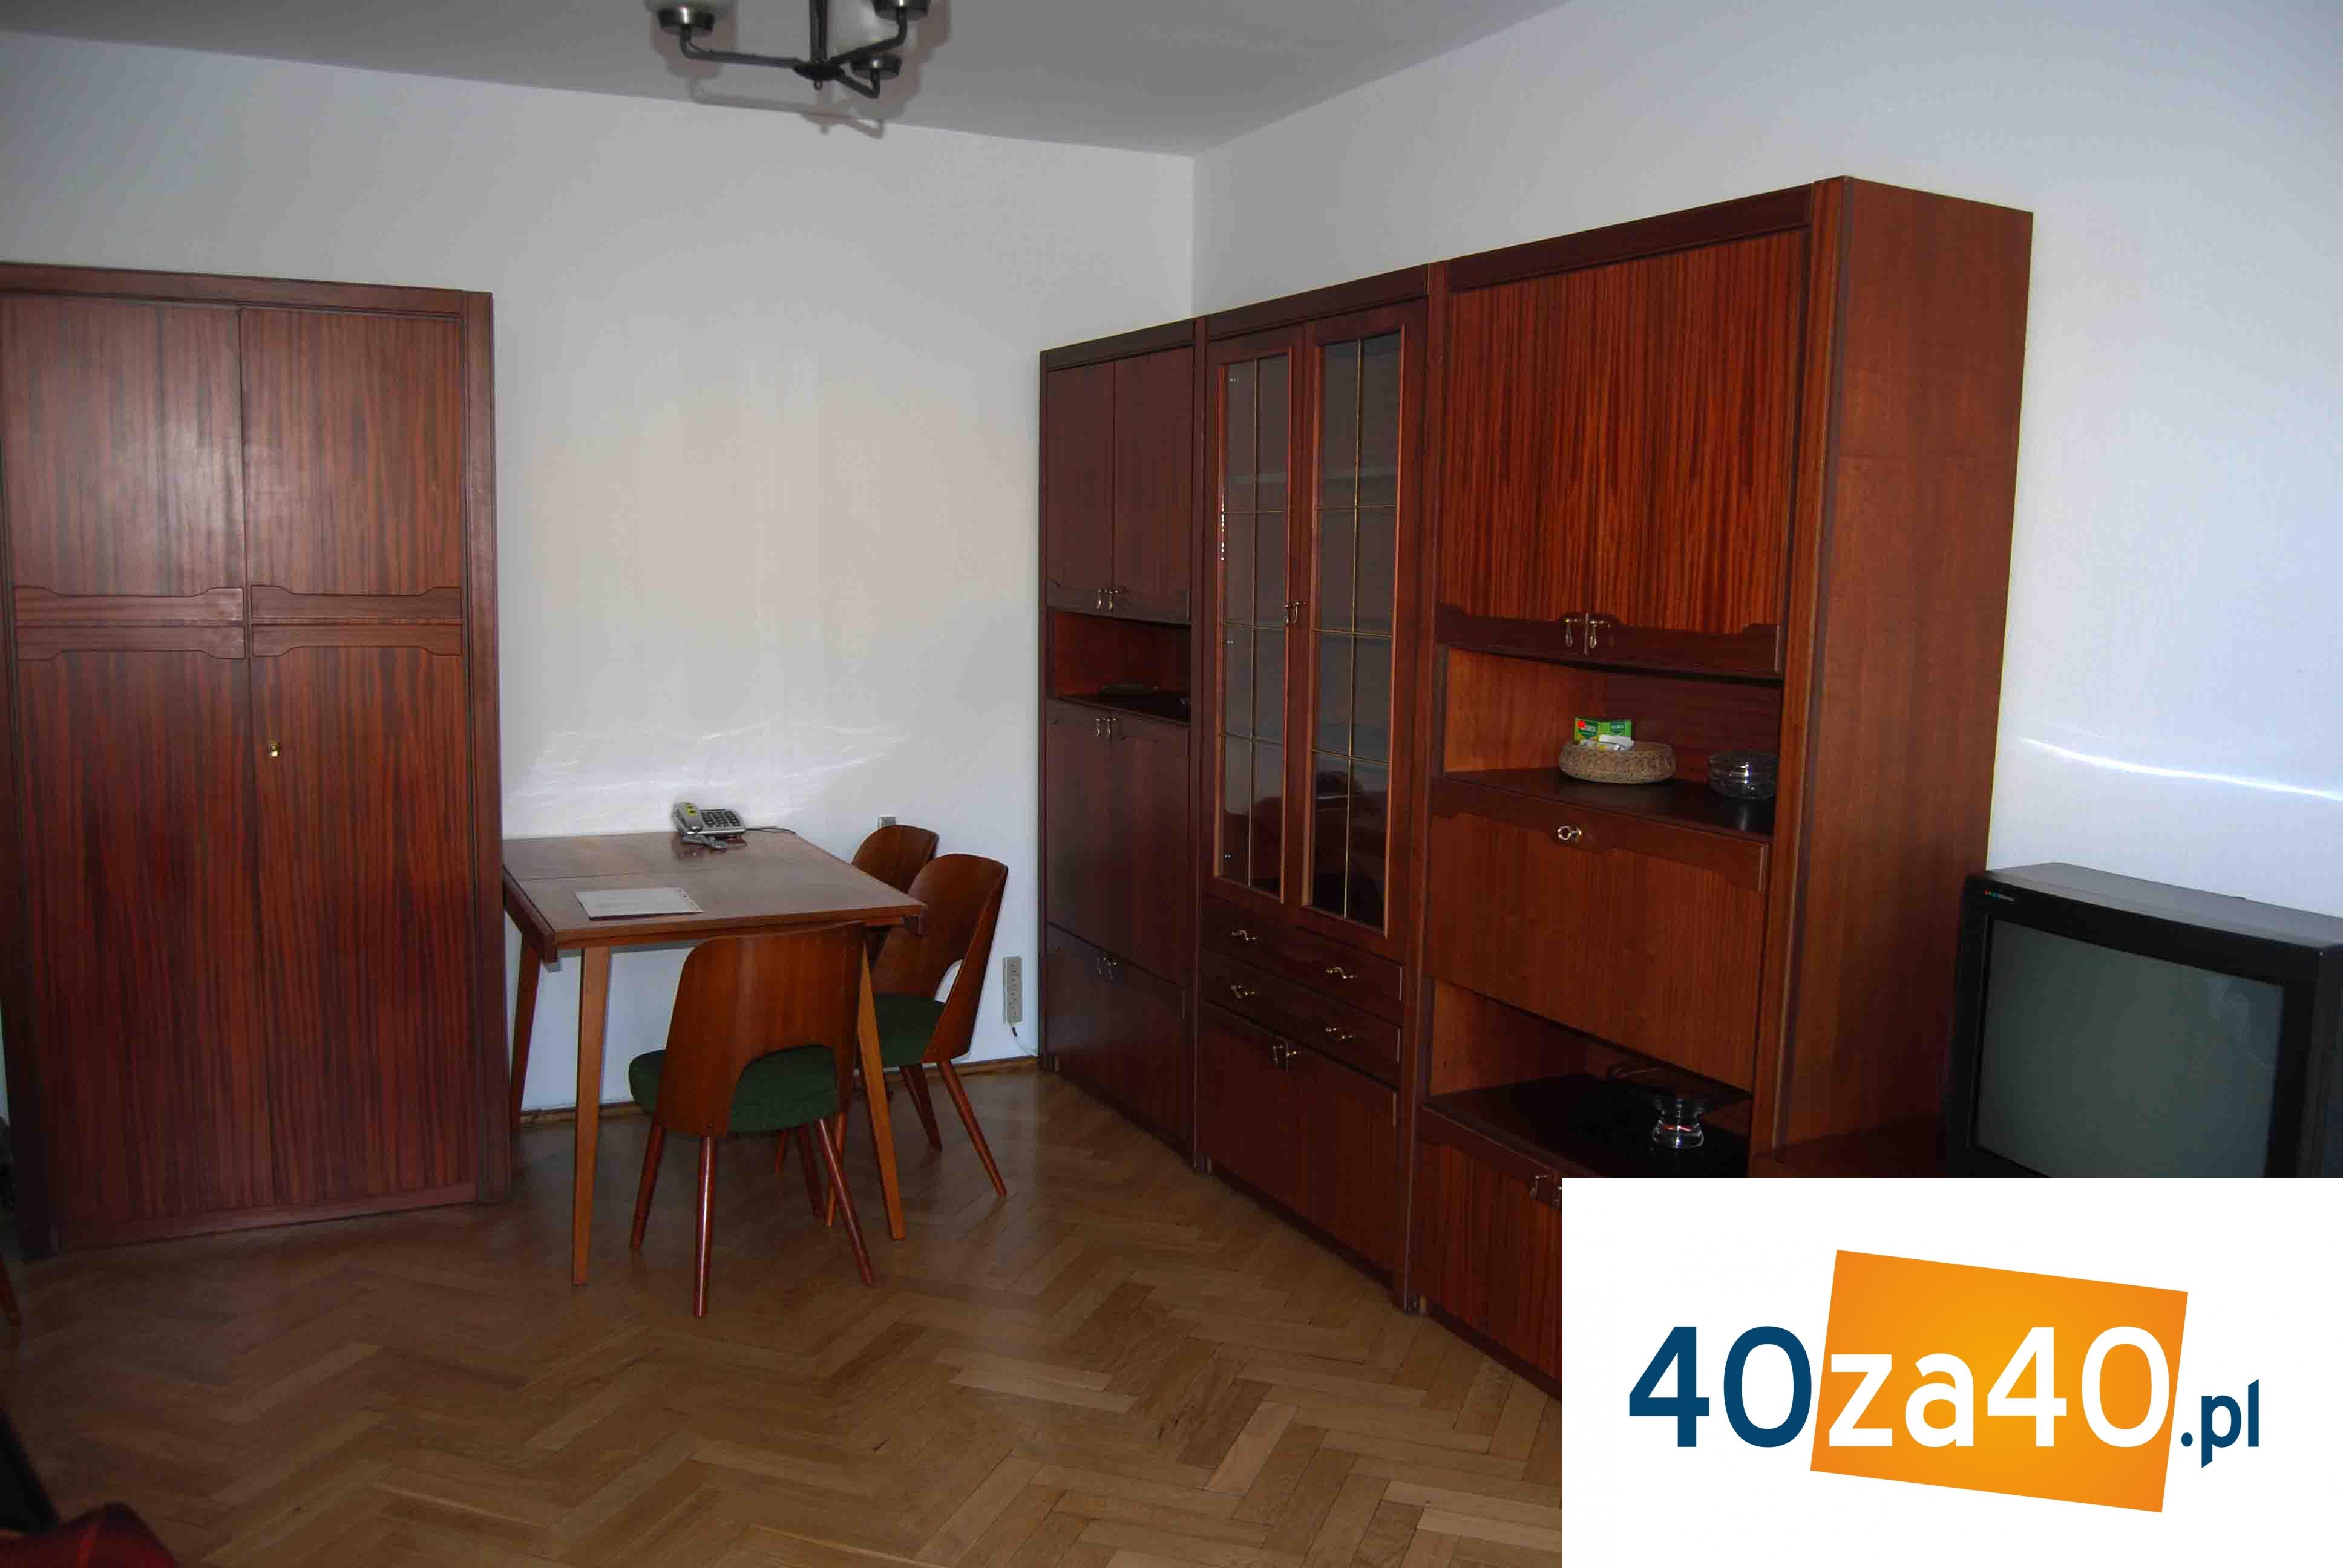 Mieszkanie do wynajęcia, pokoje: 2, cena: 1 800,00 PLN, Warszawa, kontakt: 507796212